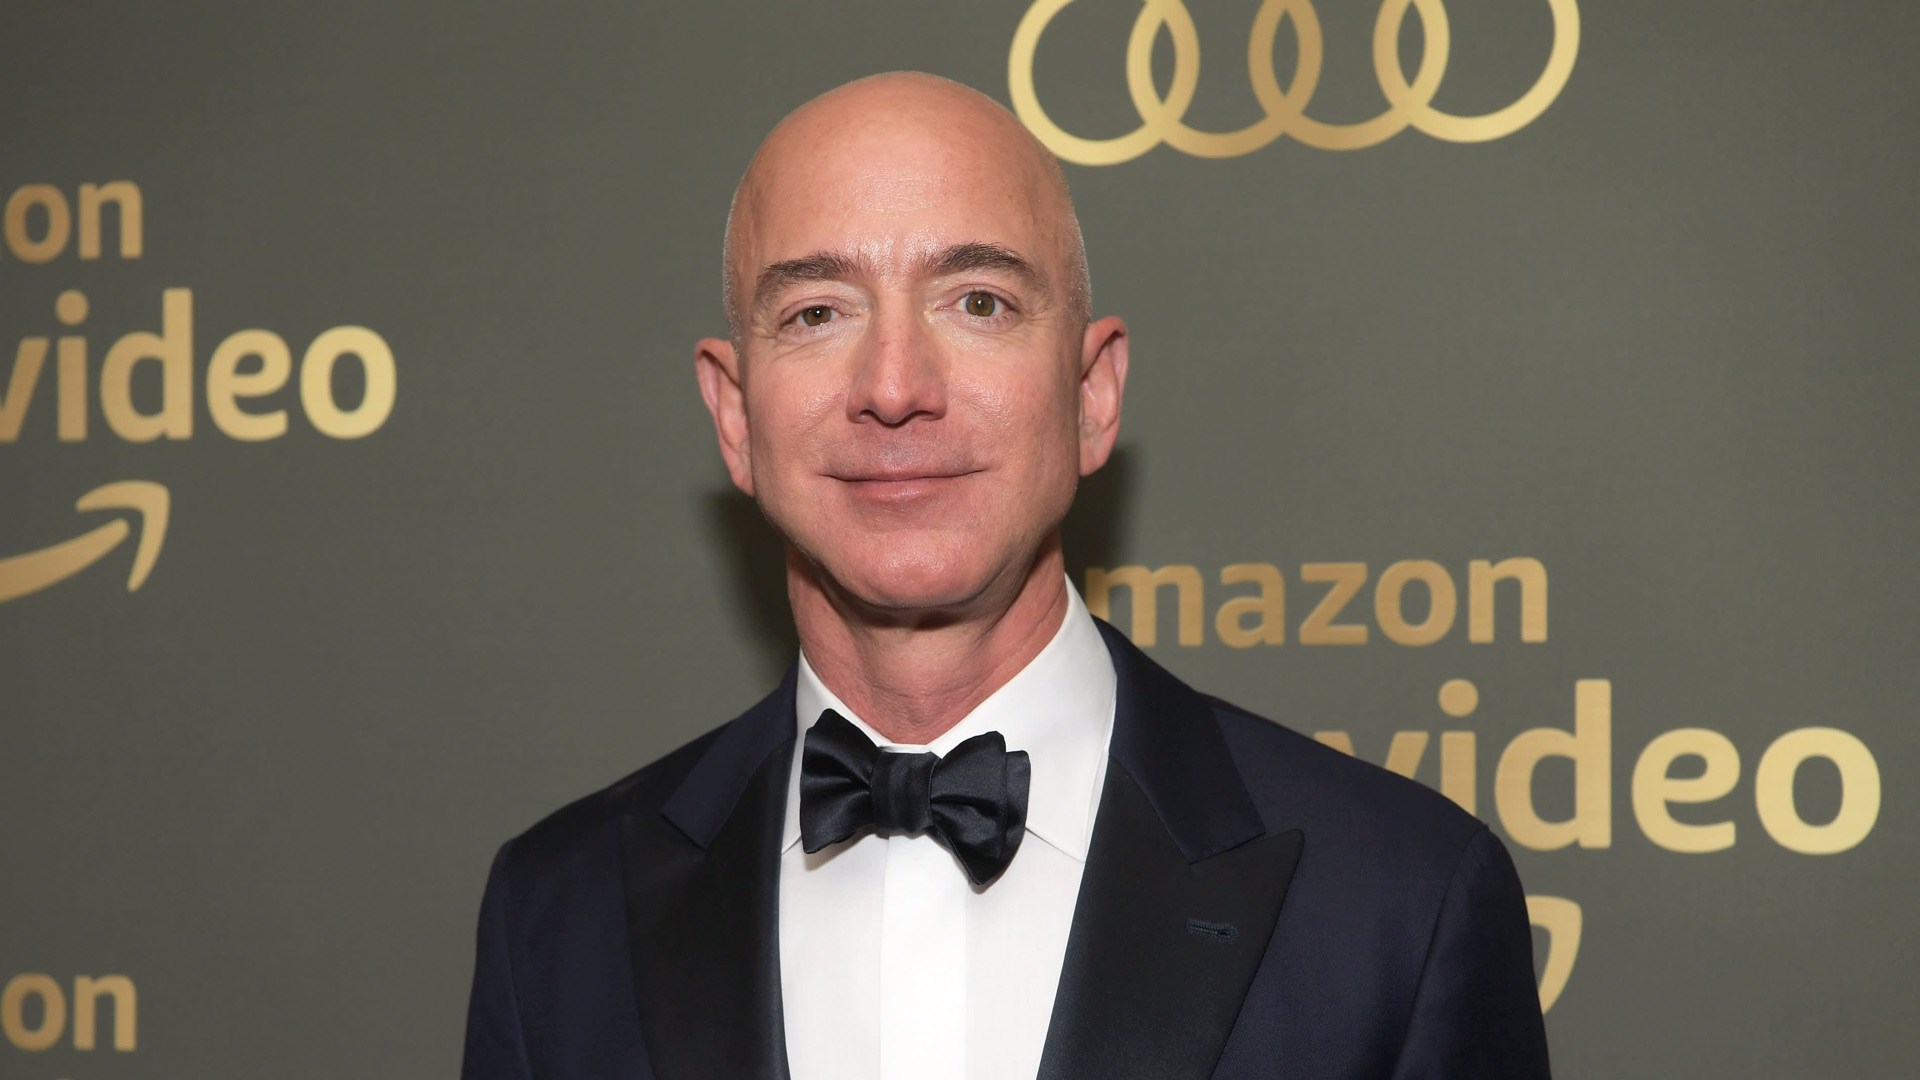 Jeff Bezos Amazon CEO görevinden ayrıldı